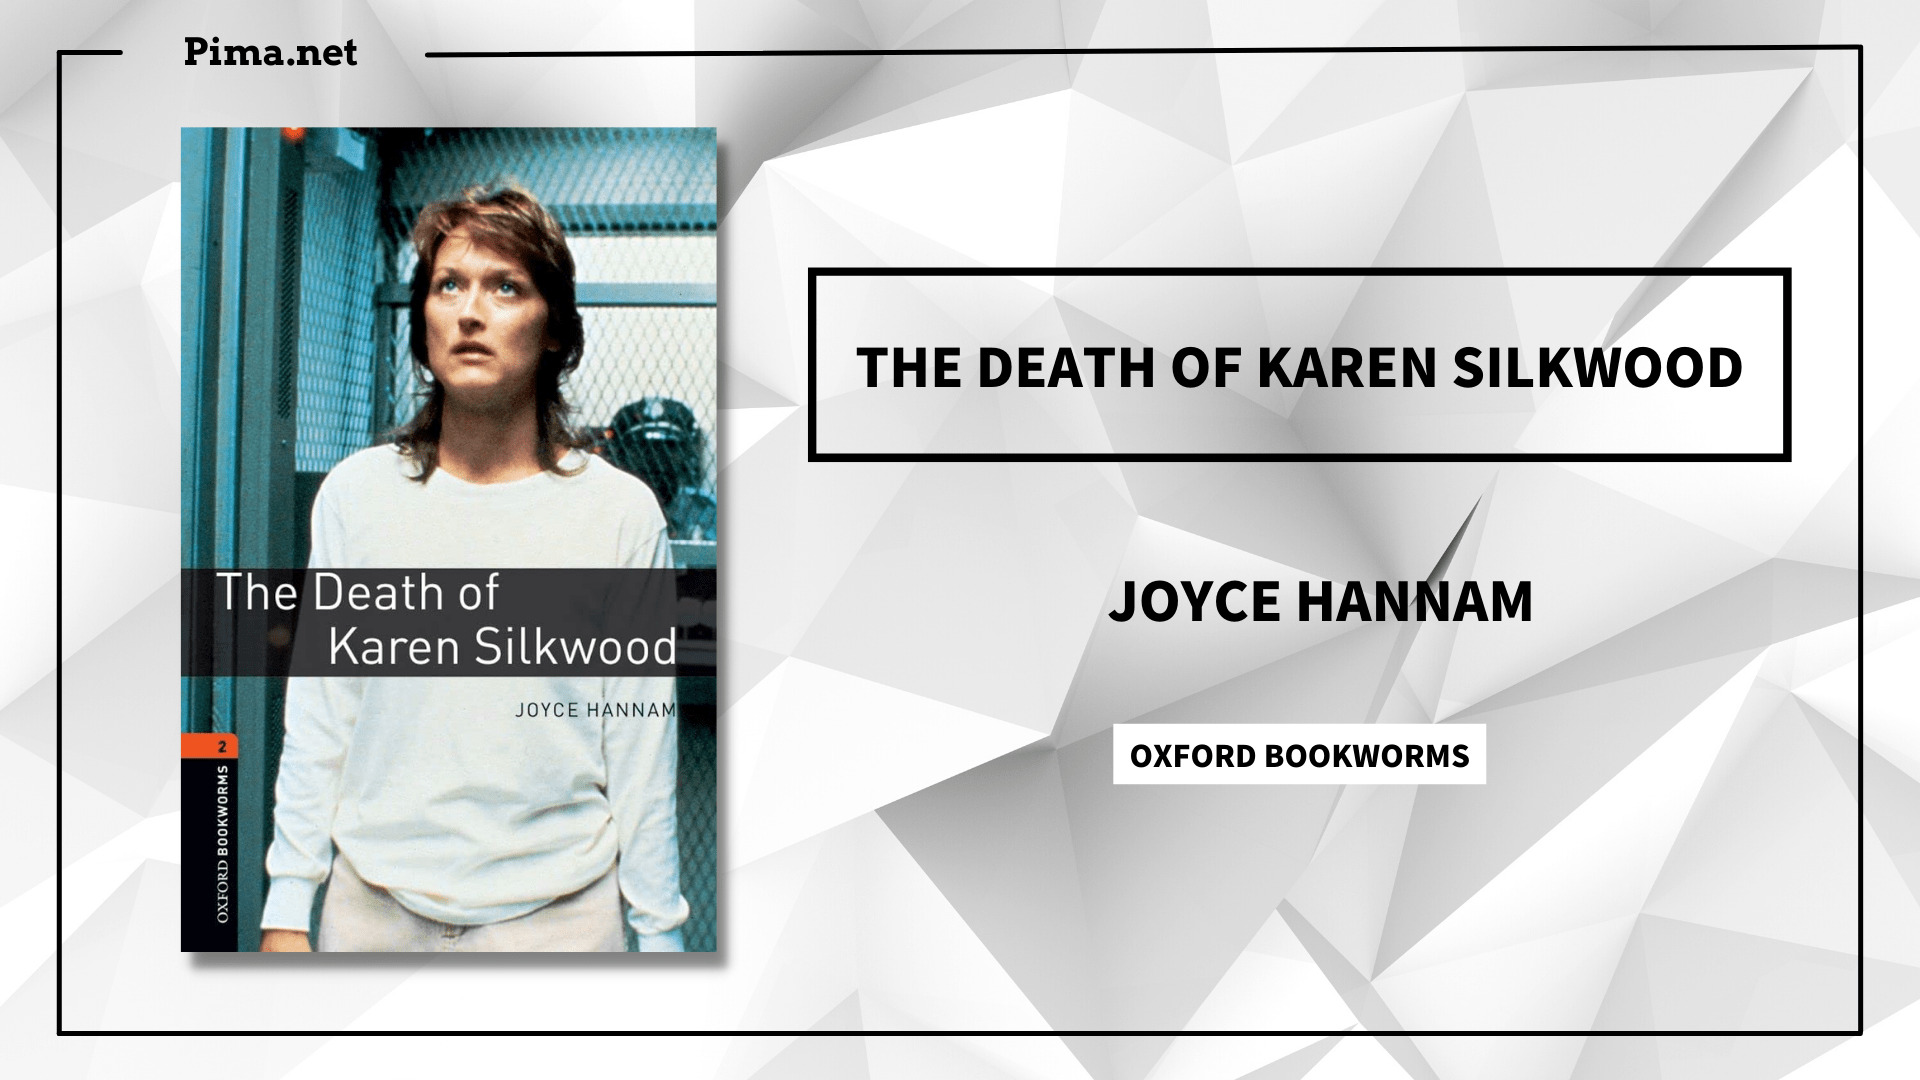 The Death of Karen Silkwood"